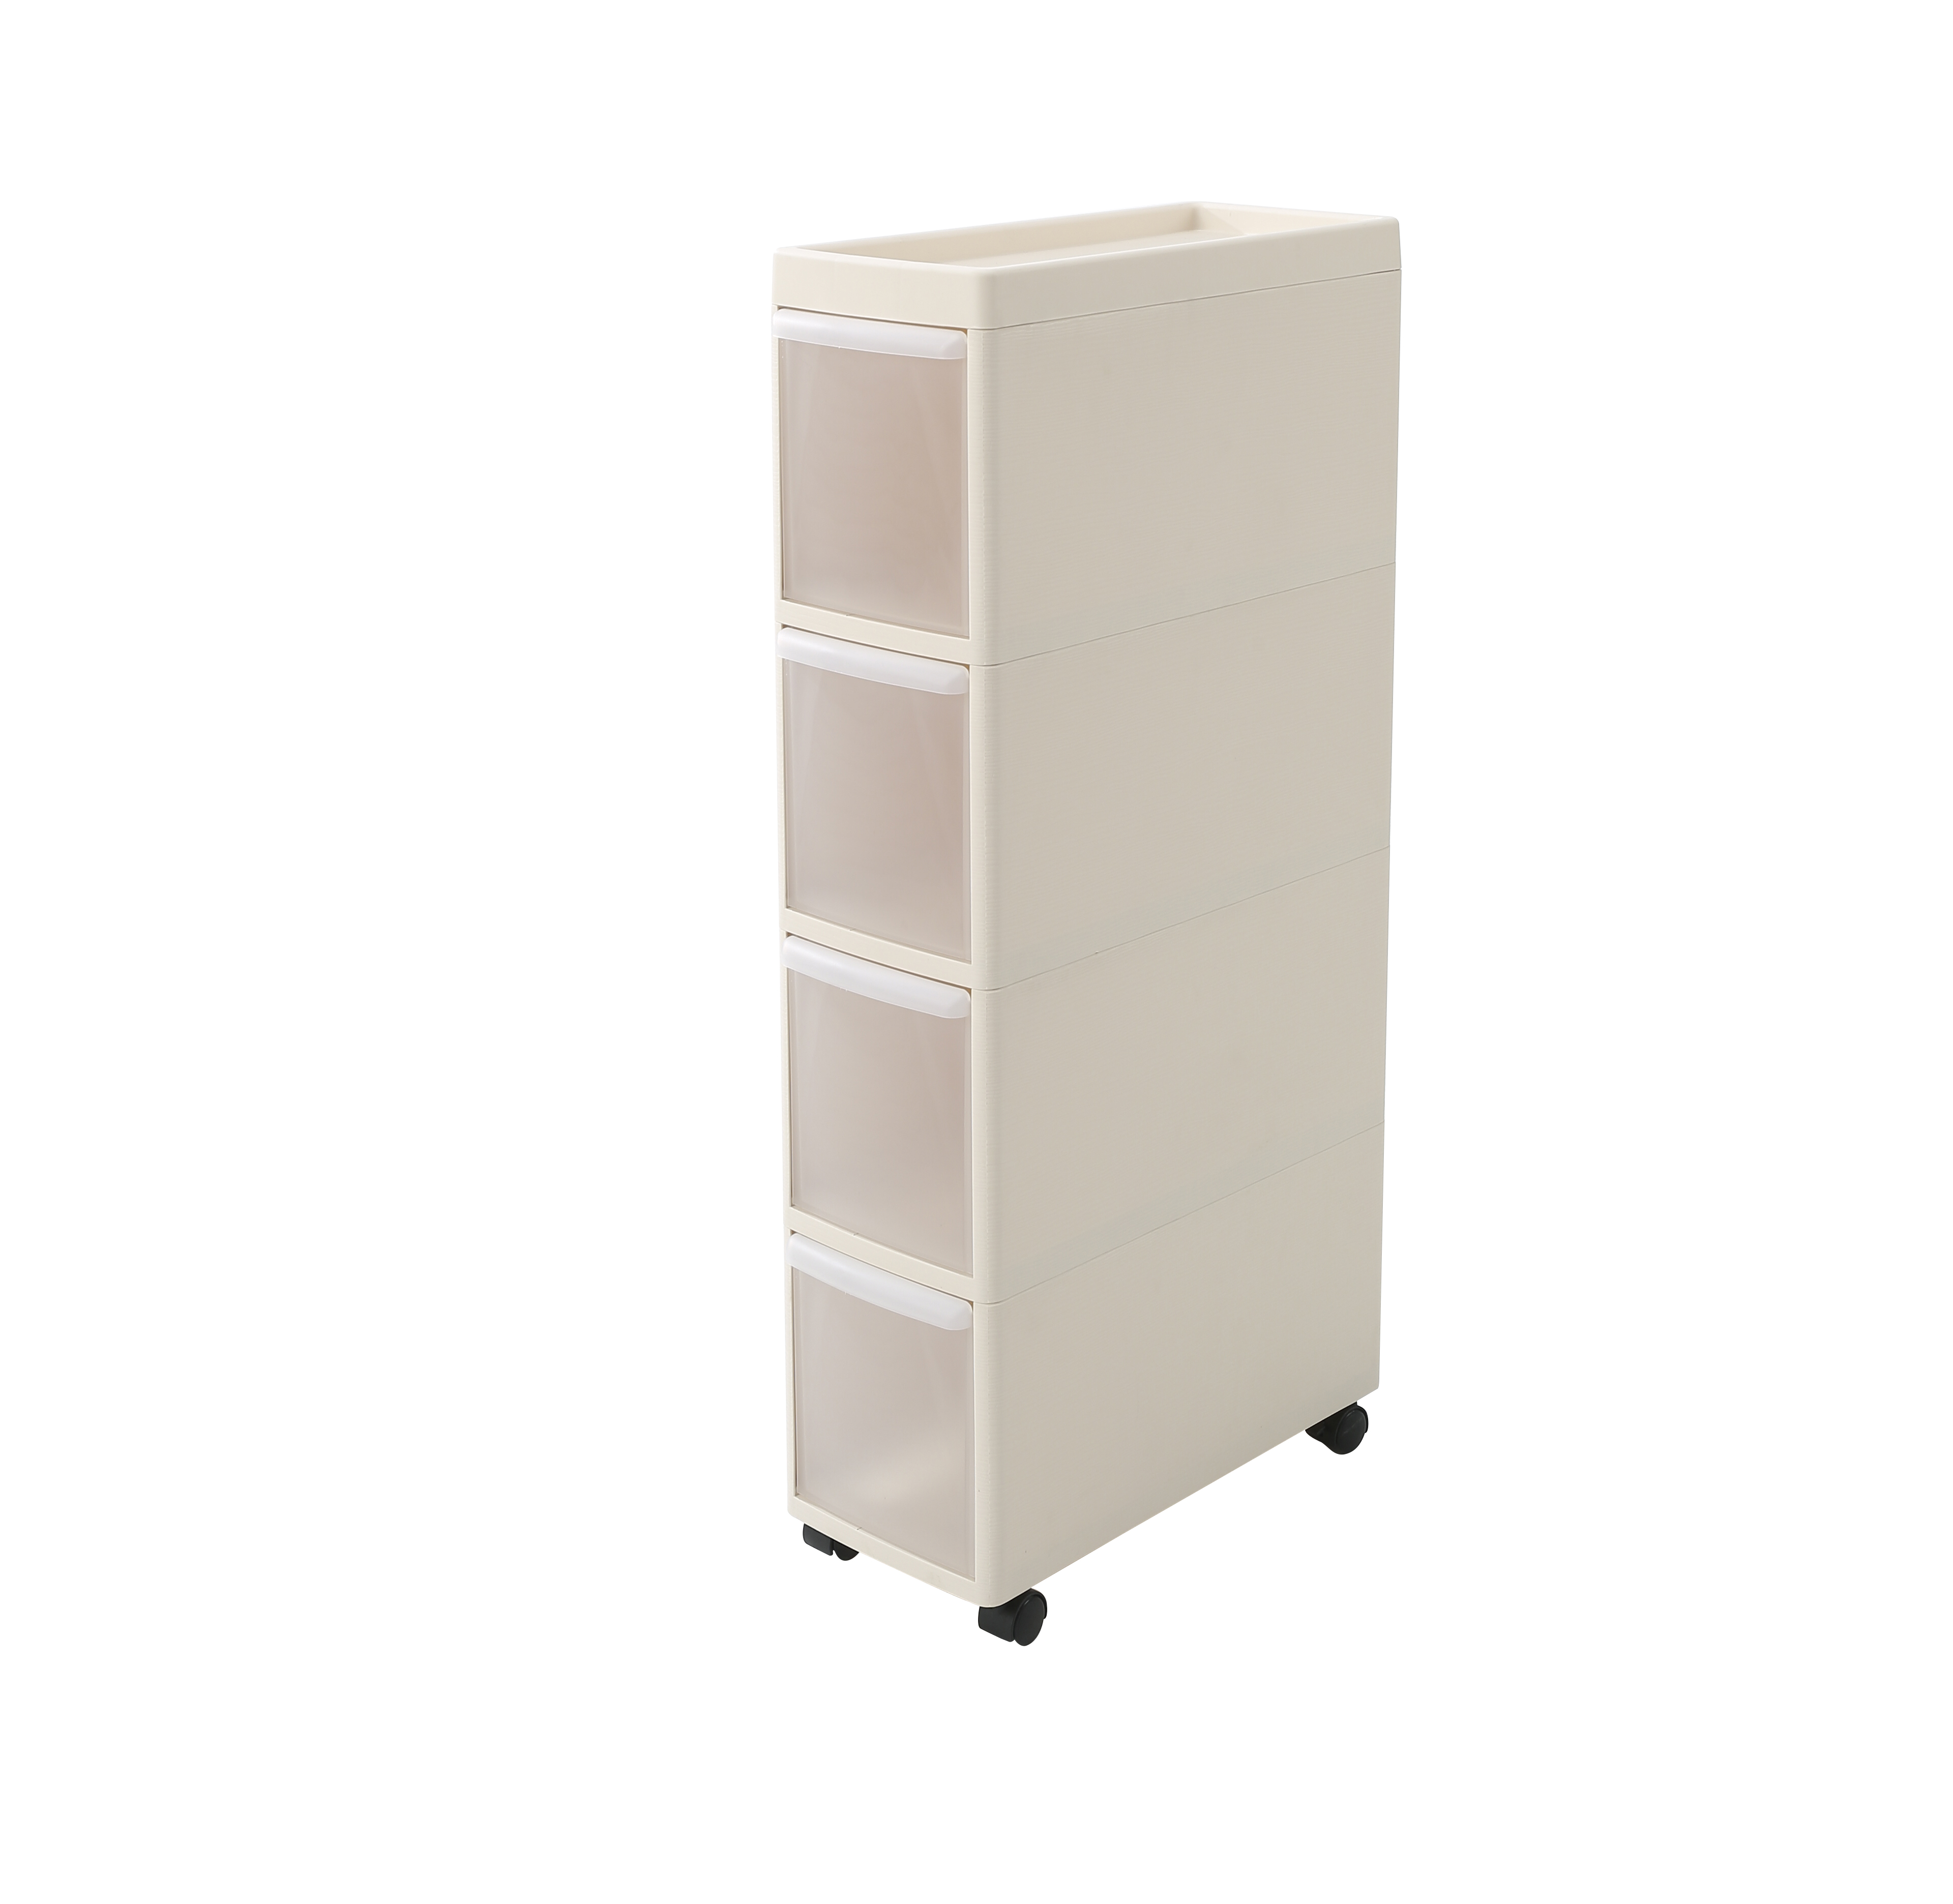 3|4 Tier Slim Storage Cabinet - Space Saving| Kitchen | Bathroom | Living Room | Organizer | Drawer